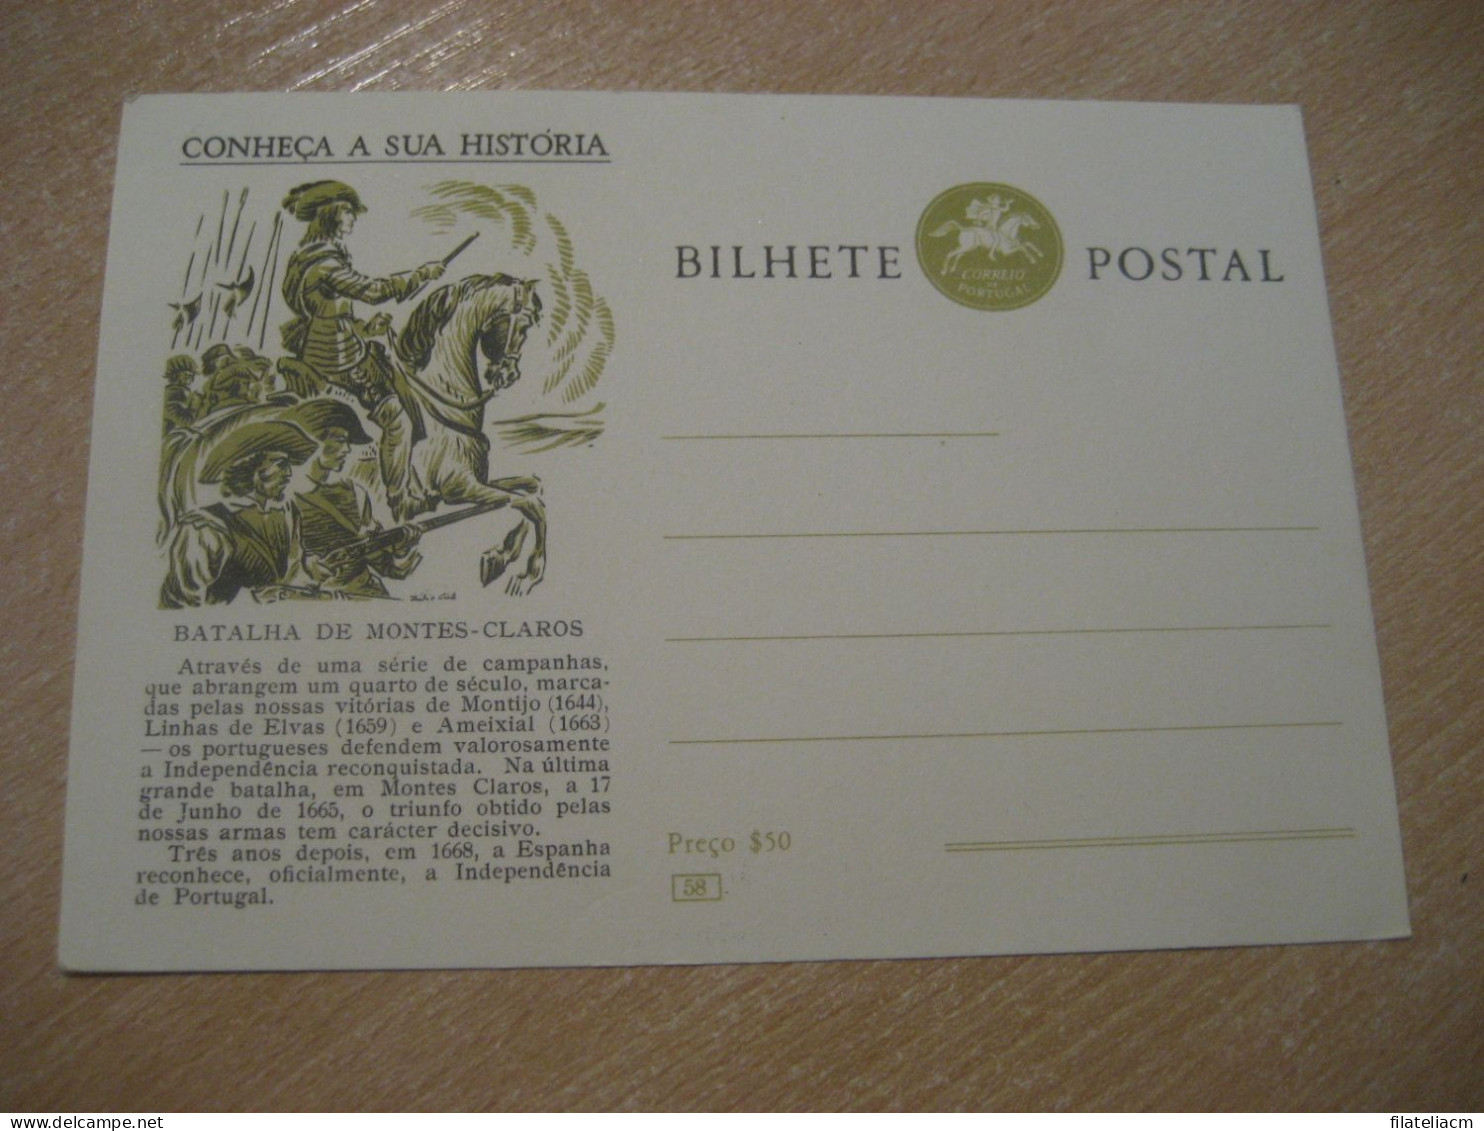 Conheça A Sua Historia Batalha De Montes-Claros Militar War Battle Bilhete Postal Stationery Card PORTUGAL - Postal Stationery